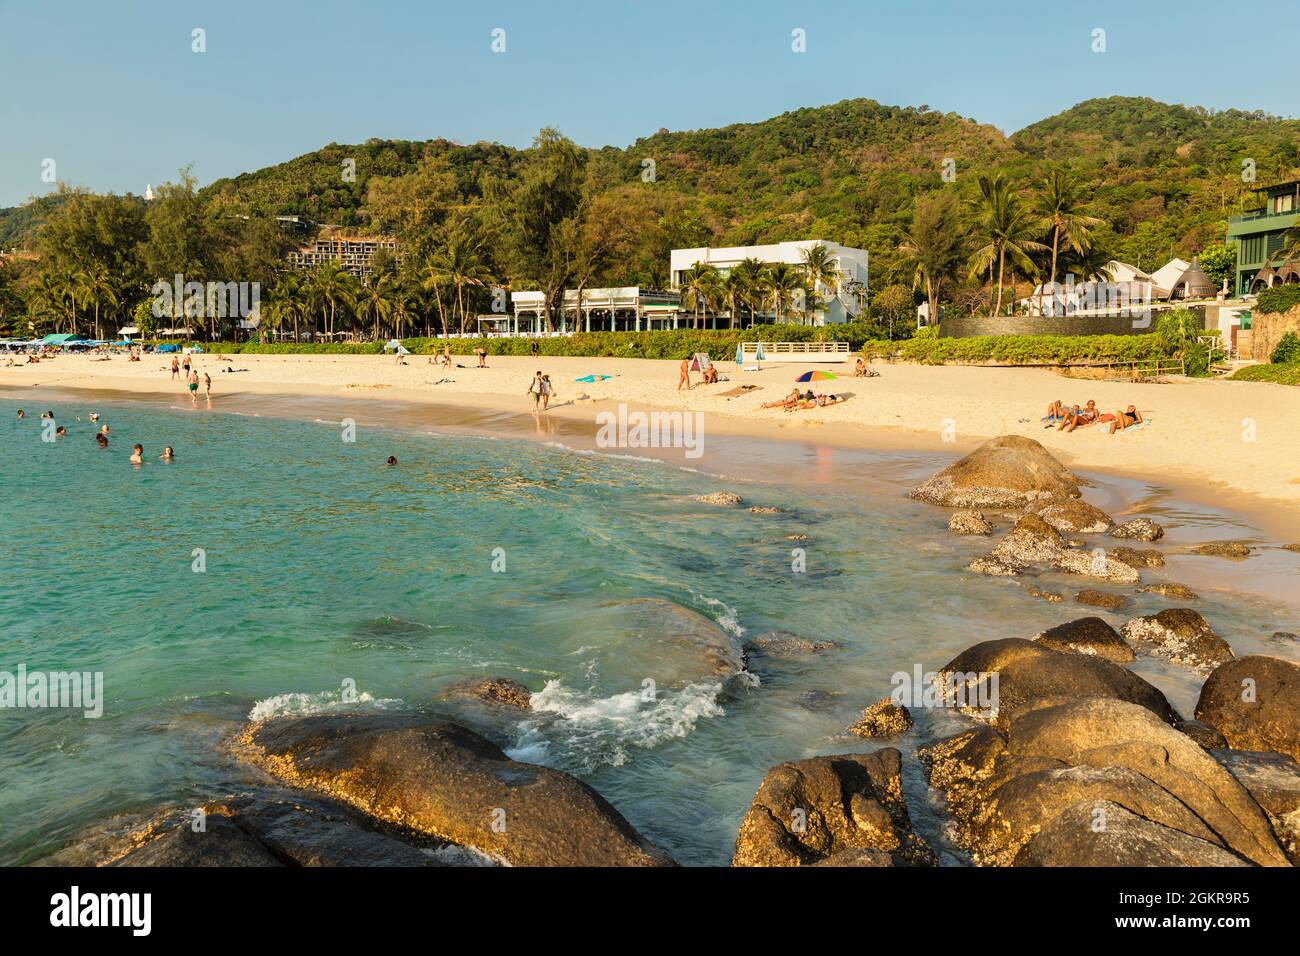 Kata Noi Beach, Phuket, Andaman Sea, Indian Ocean, Thailand, Southeast Asia, Asia Stock Photo